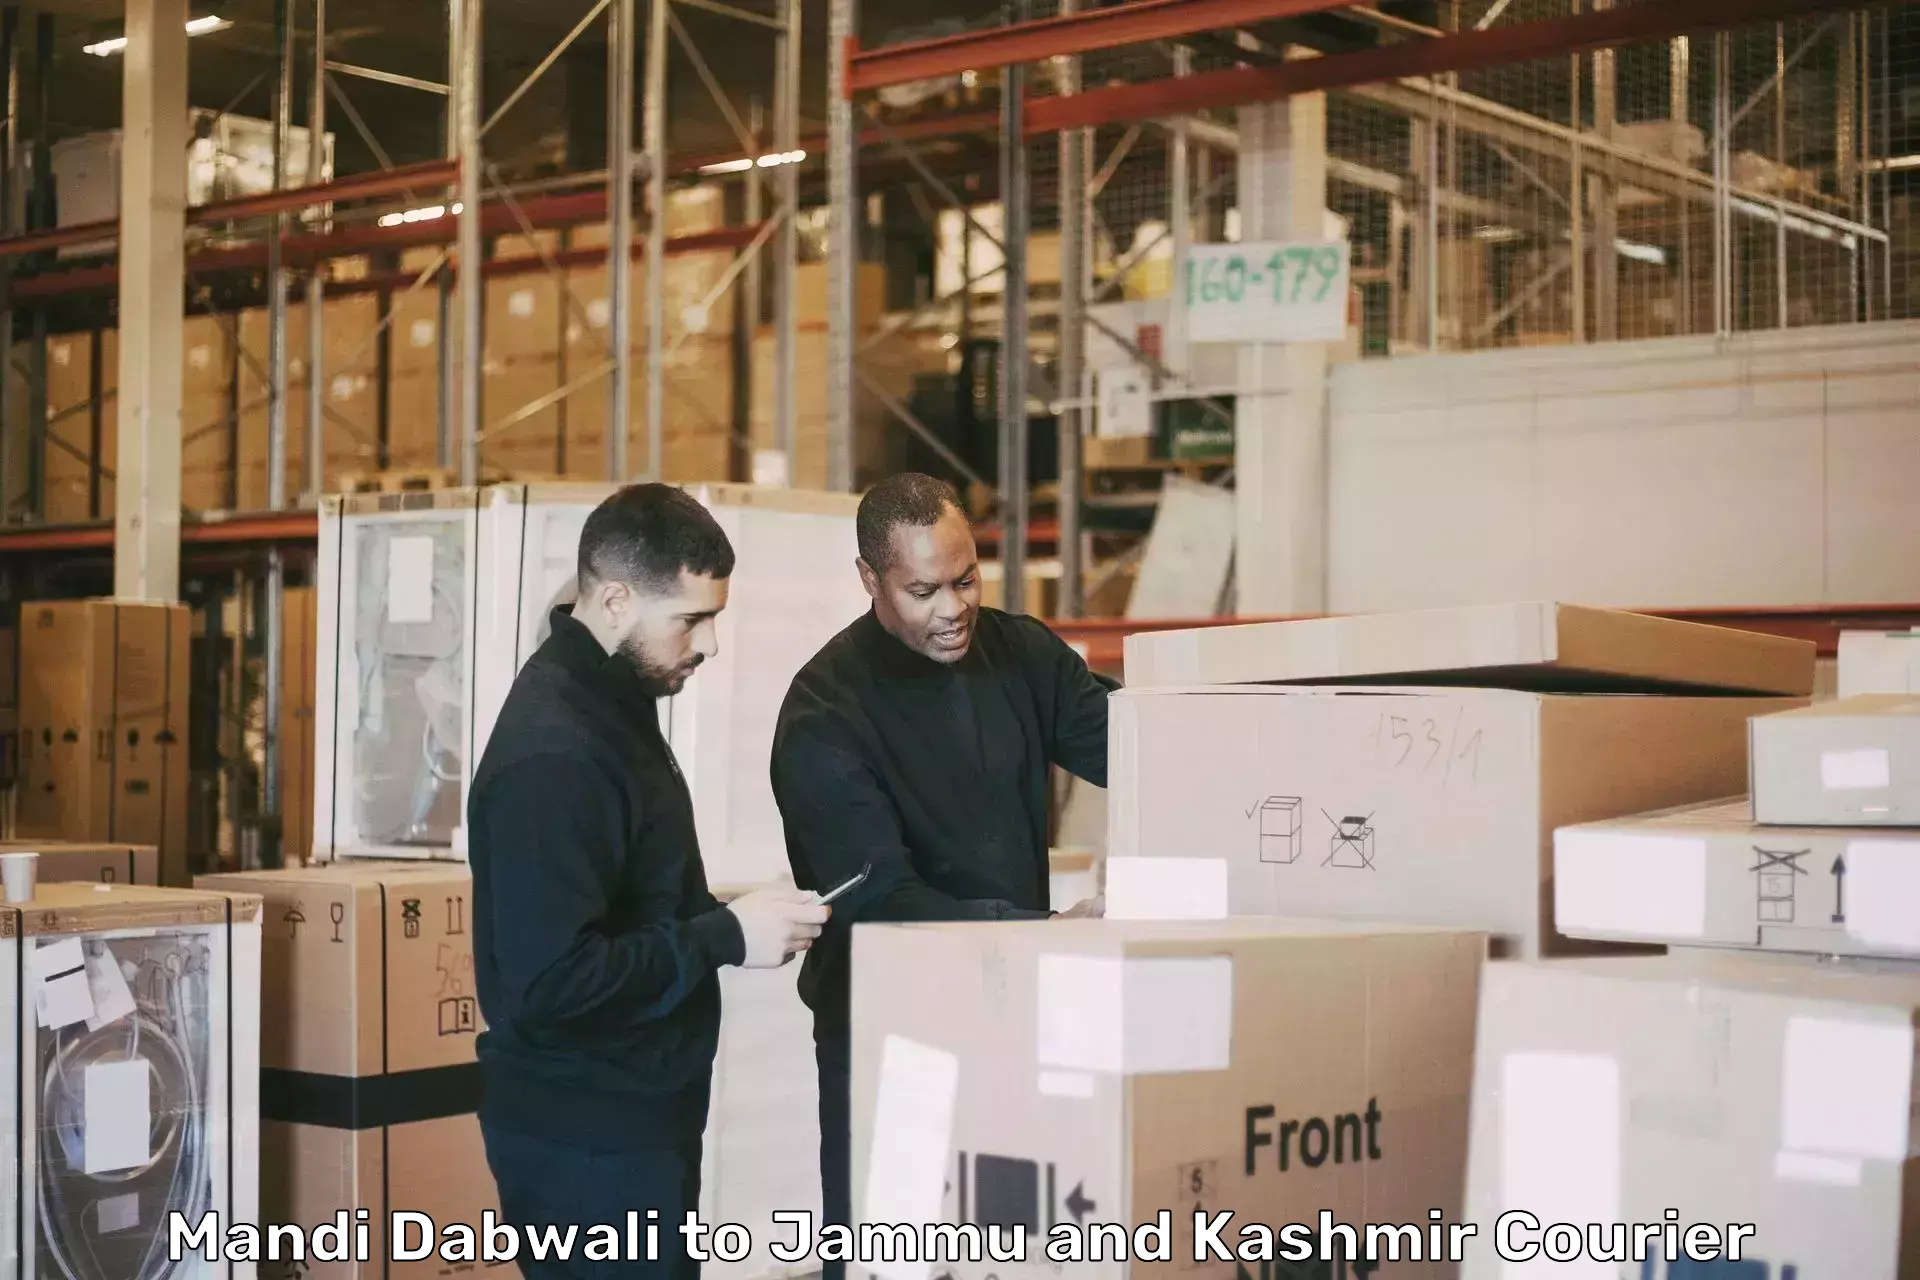 Furniture transport specialists Mandi Dabwali to Shopian